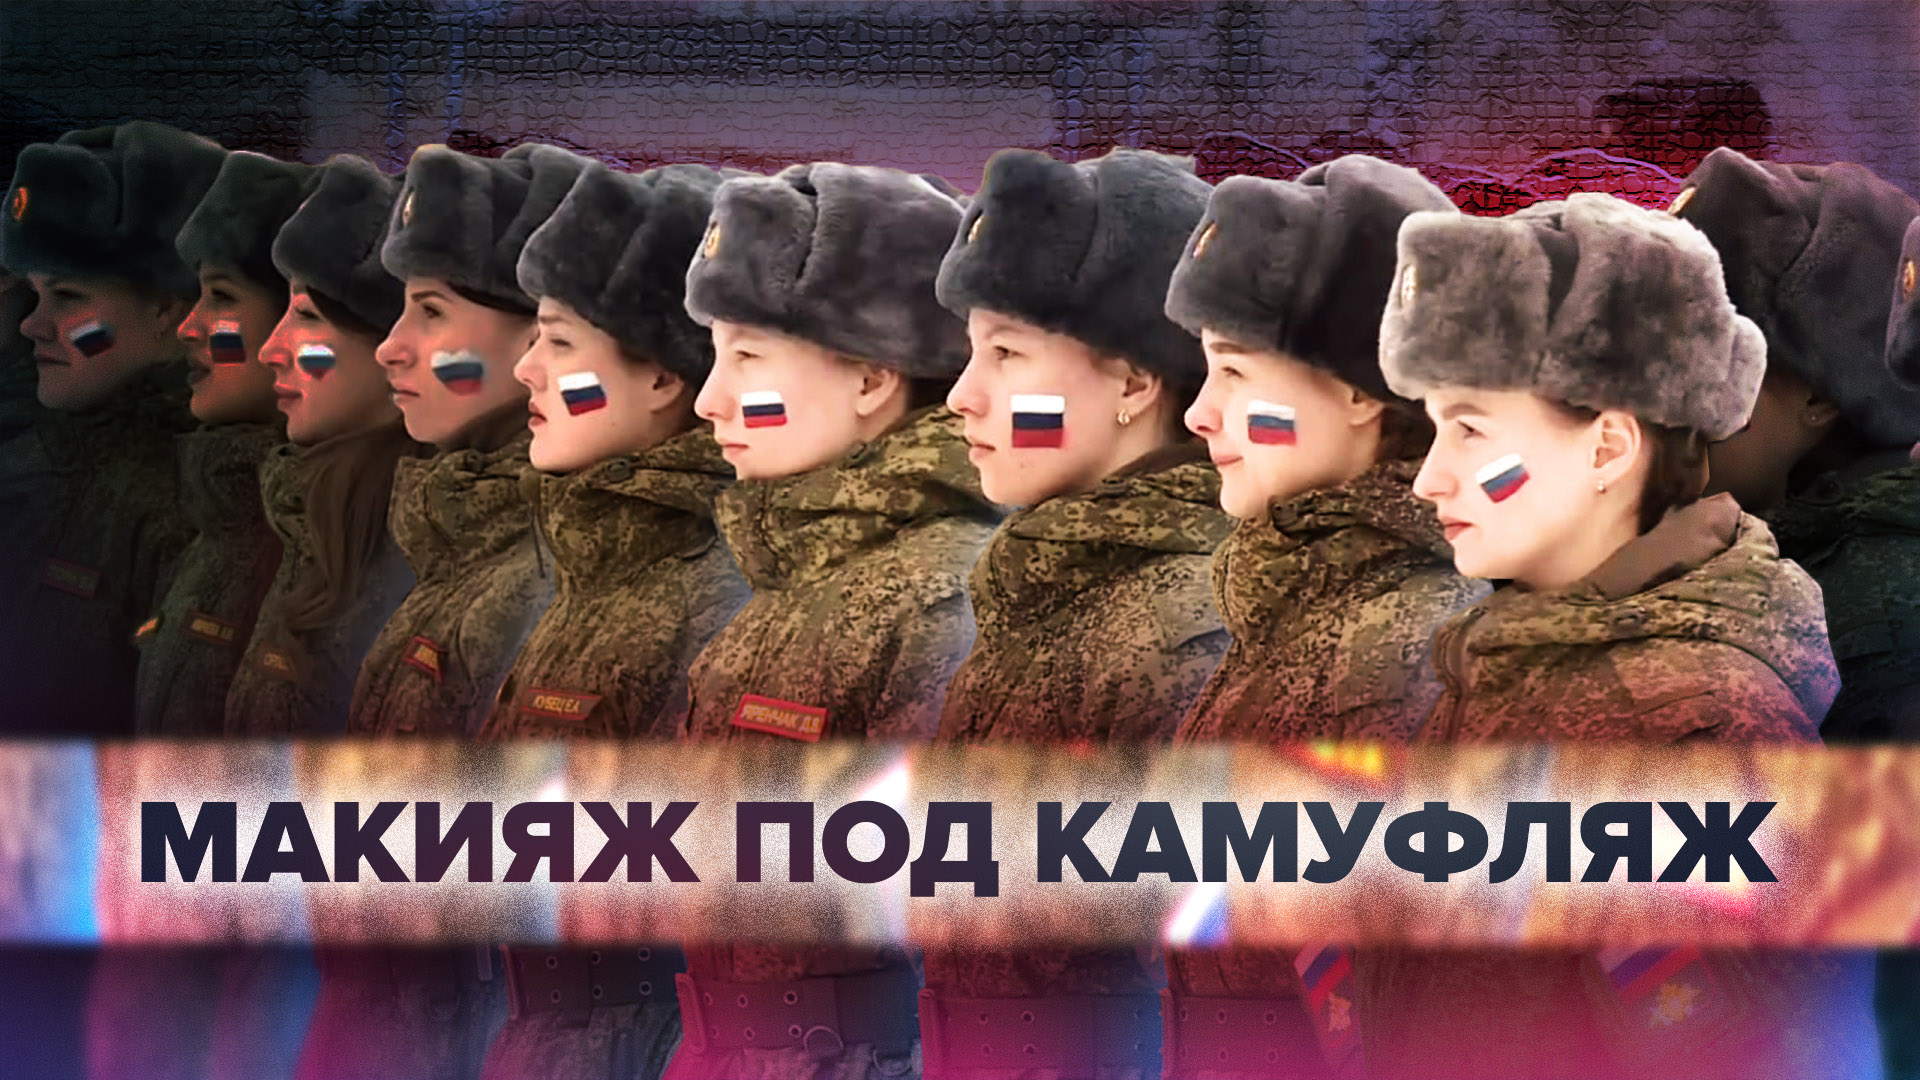 В Переславле-Залесском прошёл конкурс среди женщин-военнослужащих — видео